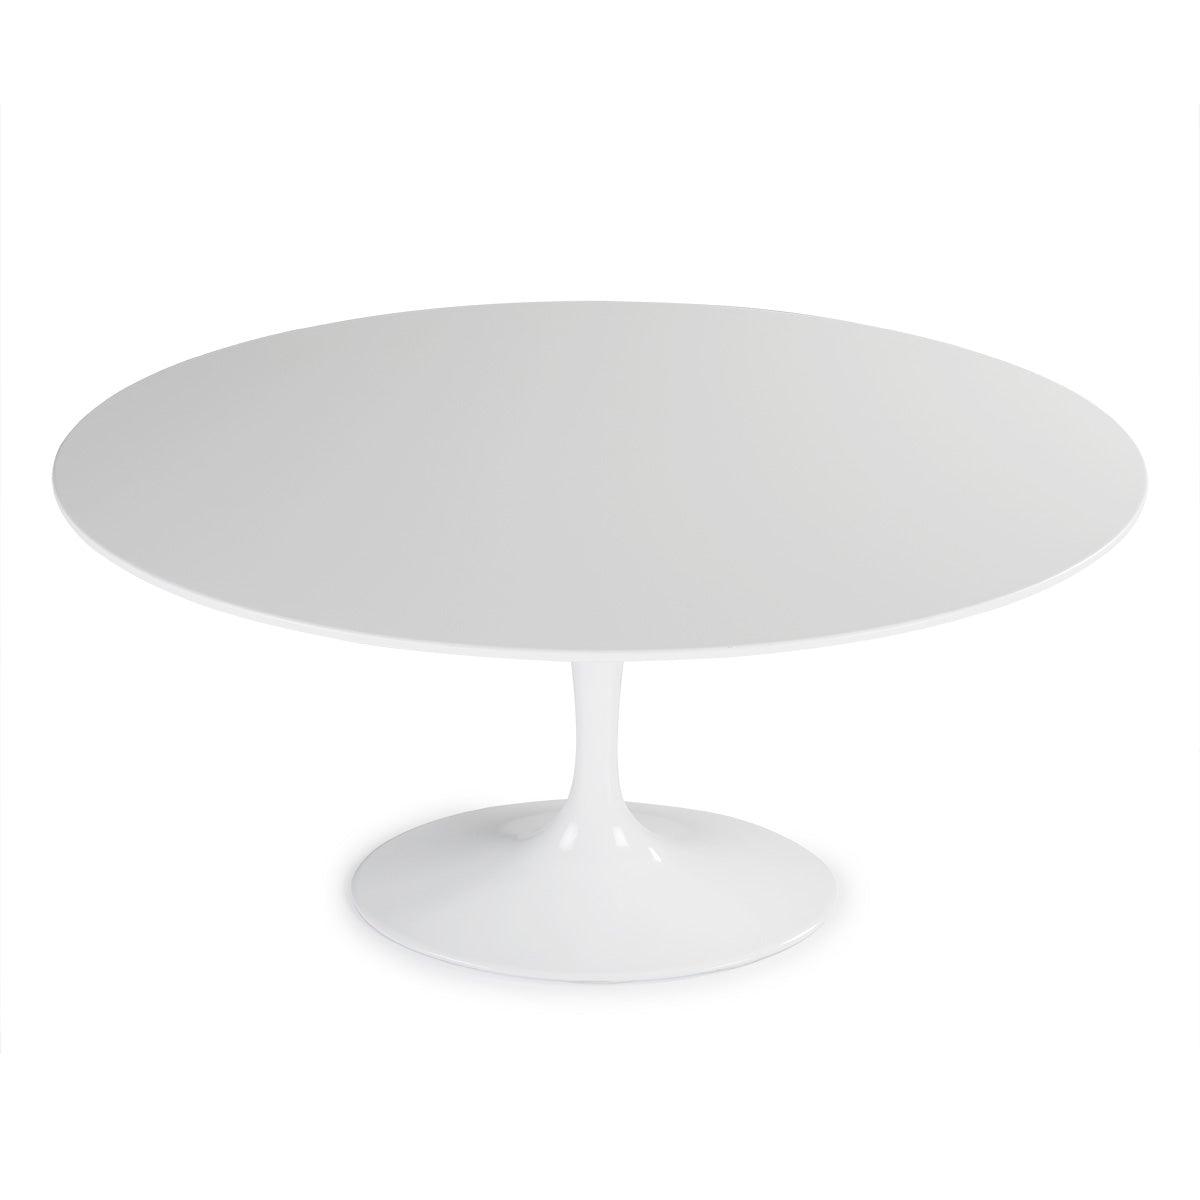 White Aluminium Dining Table